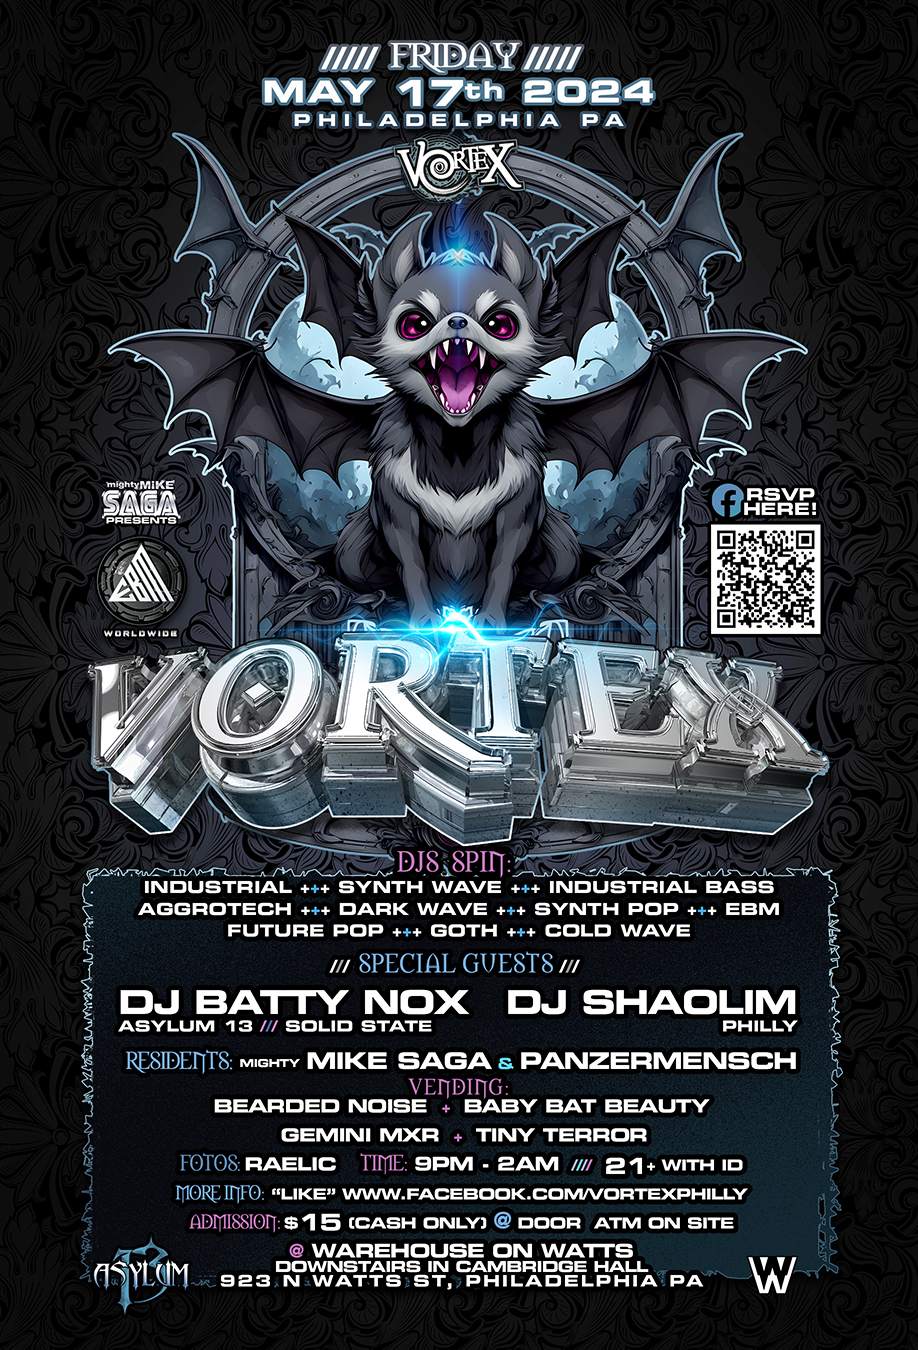 VORTEX! Goth Industrial Dark Wave CyberPunk Club Night Fri May 17th - Página frontal